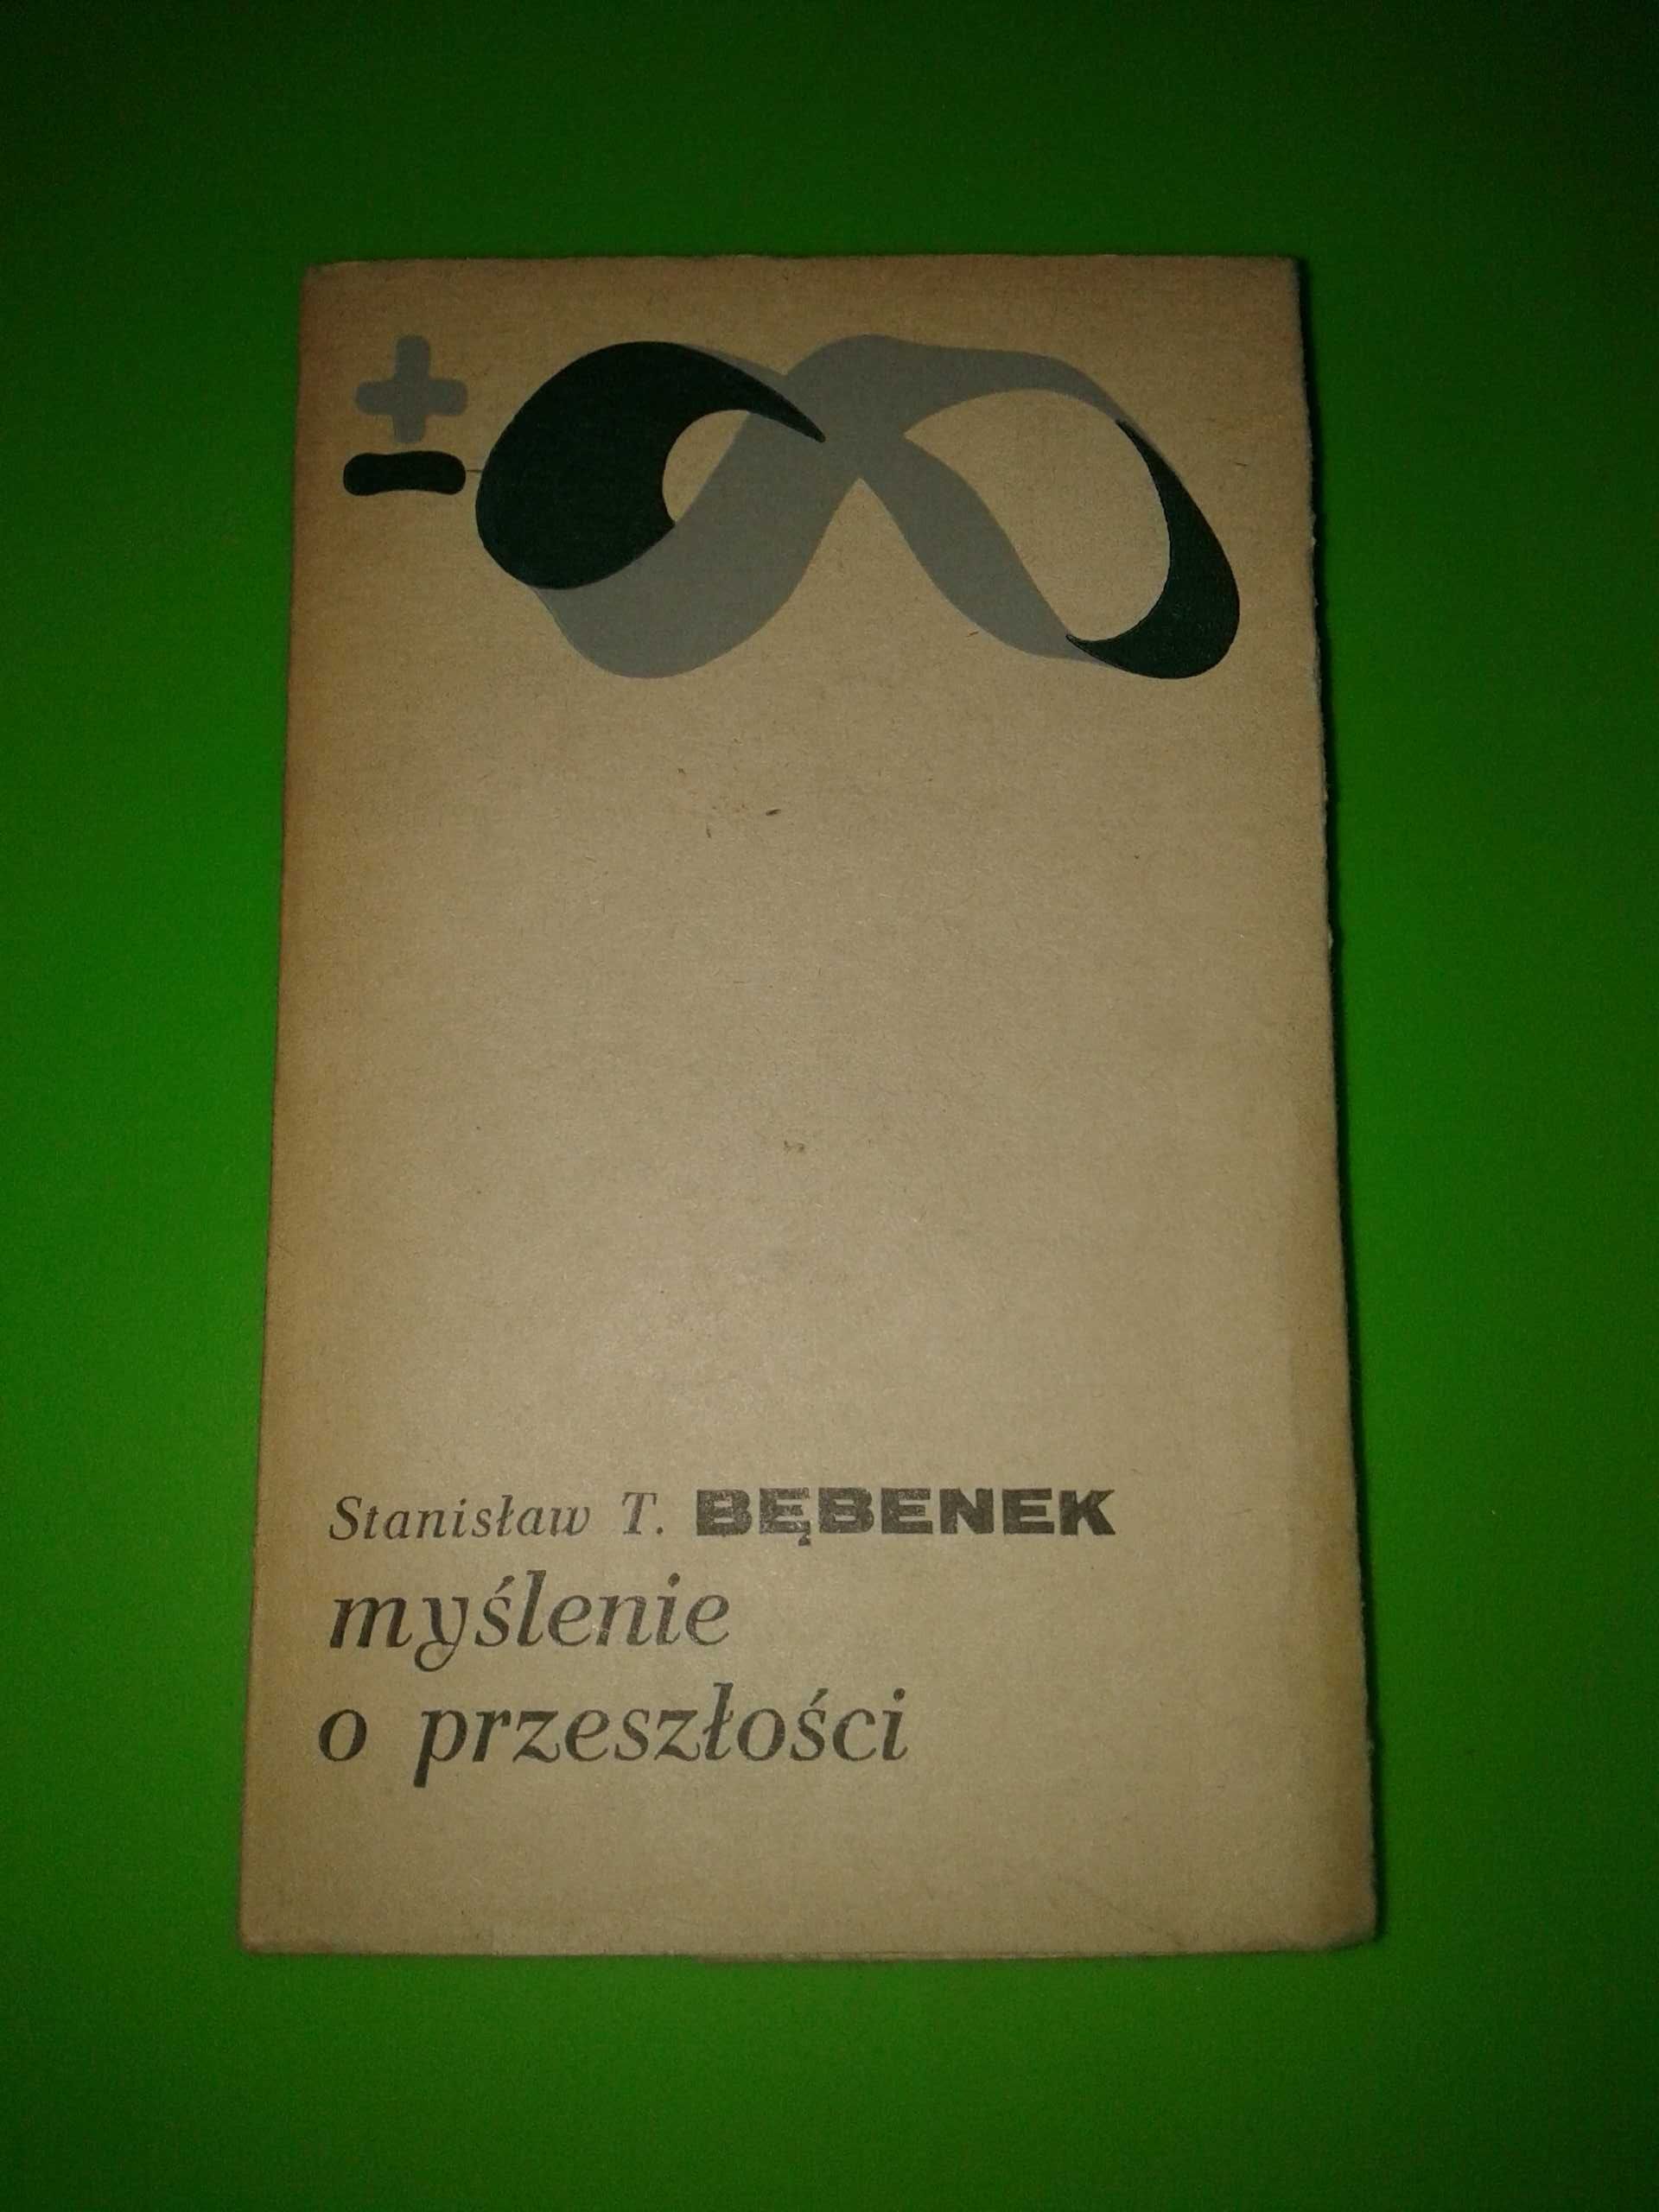 Myślenie o przeszłości - Stanisław T. Bębenek